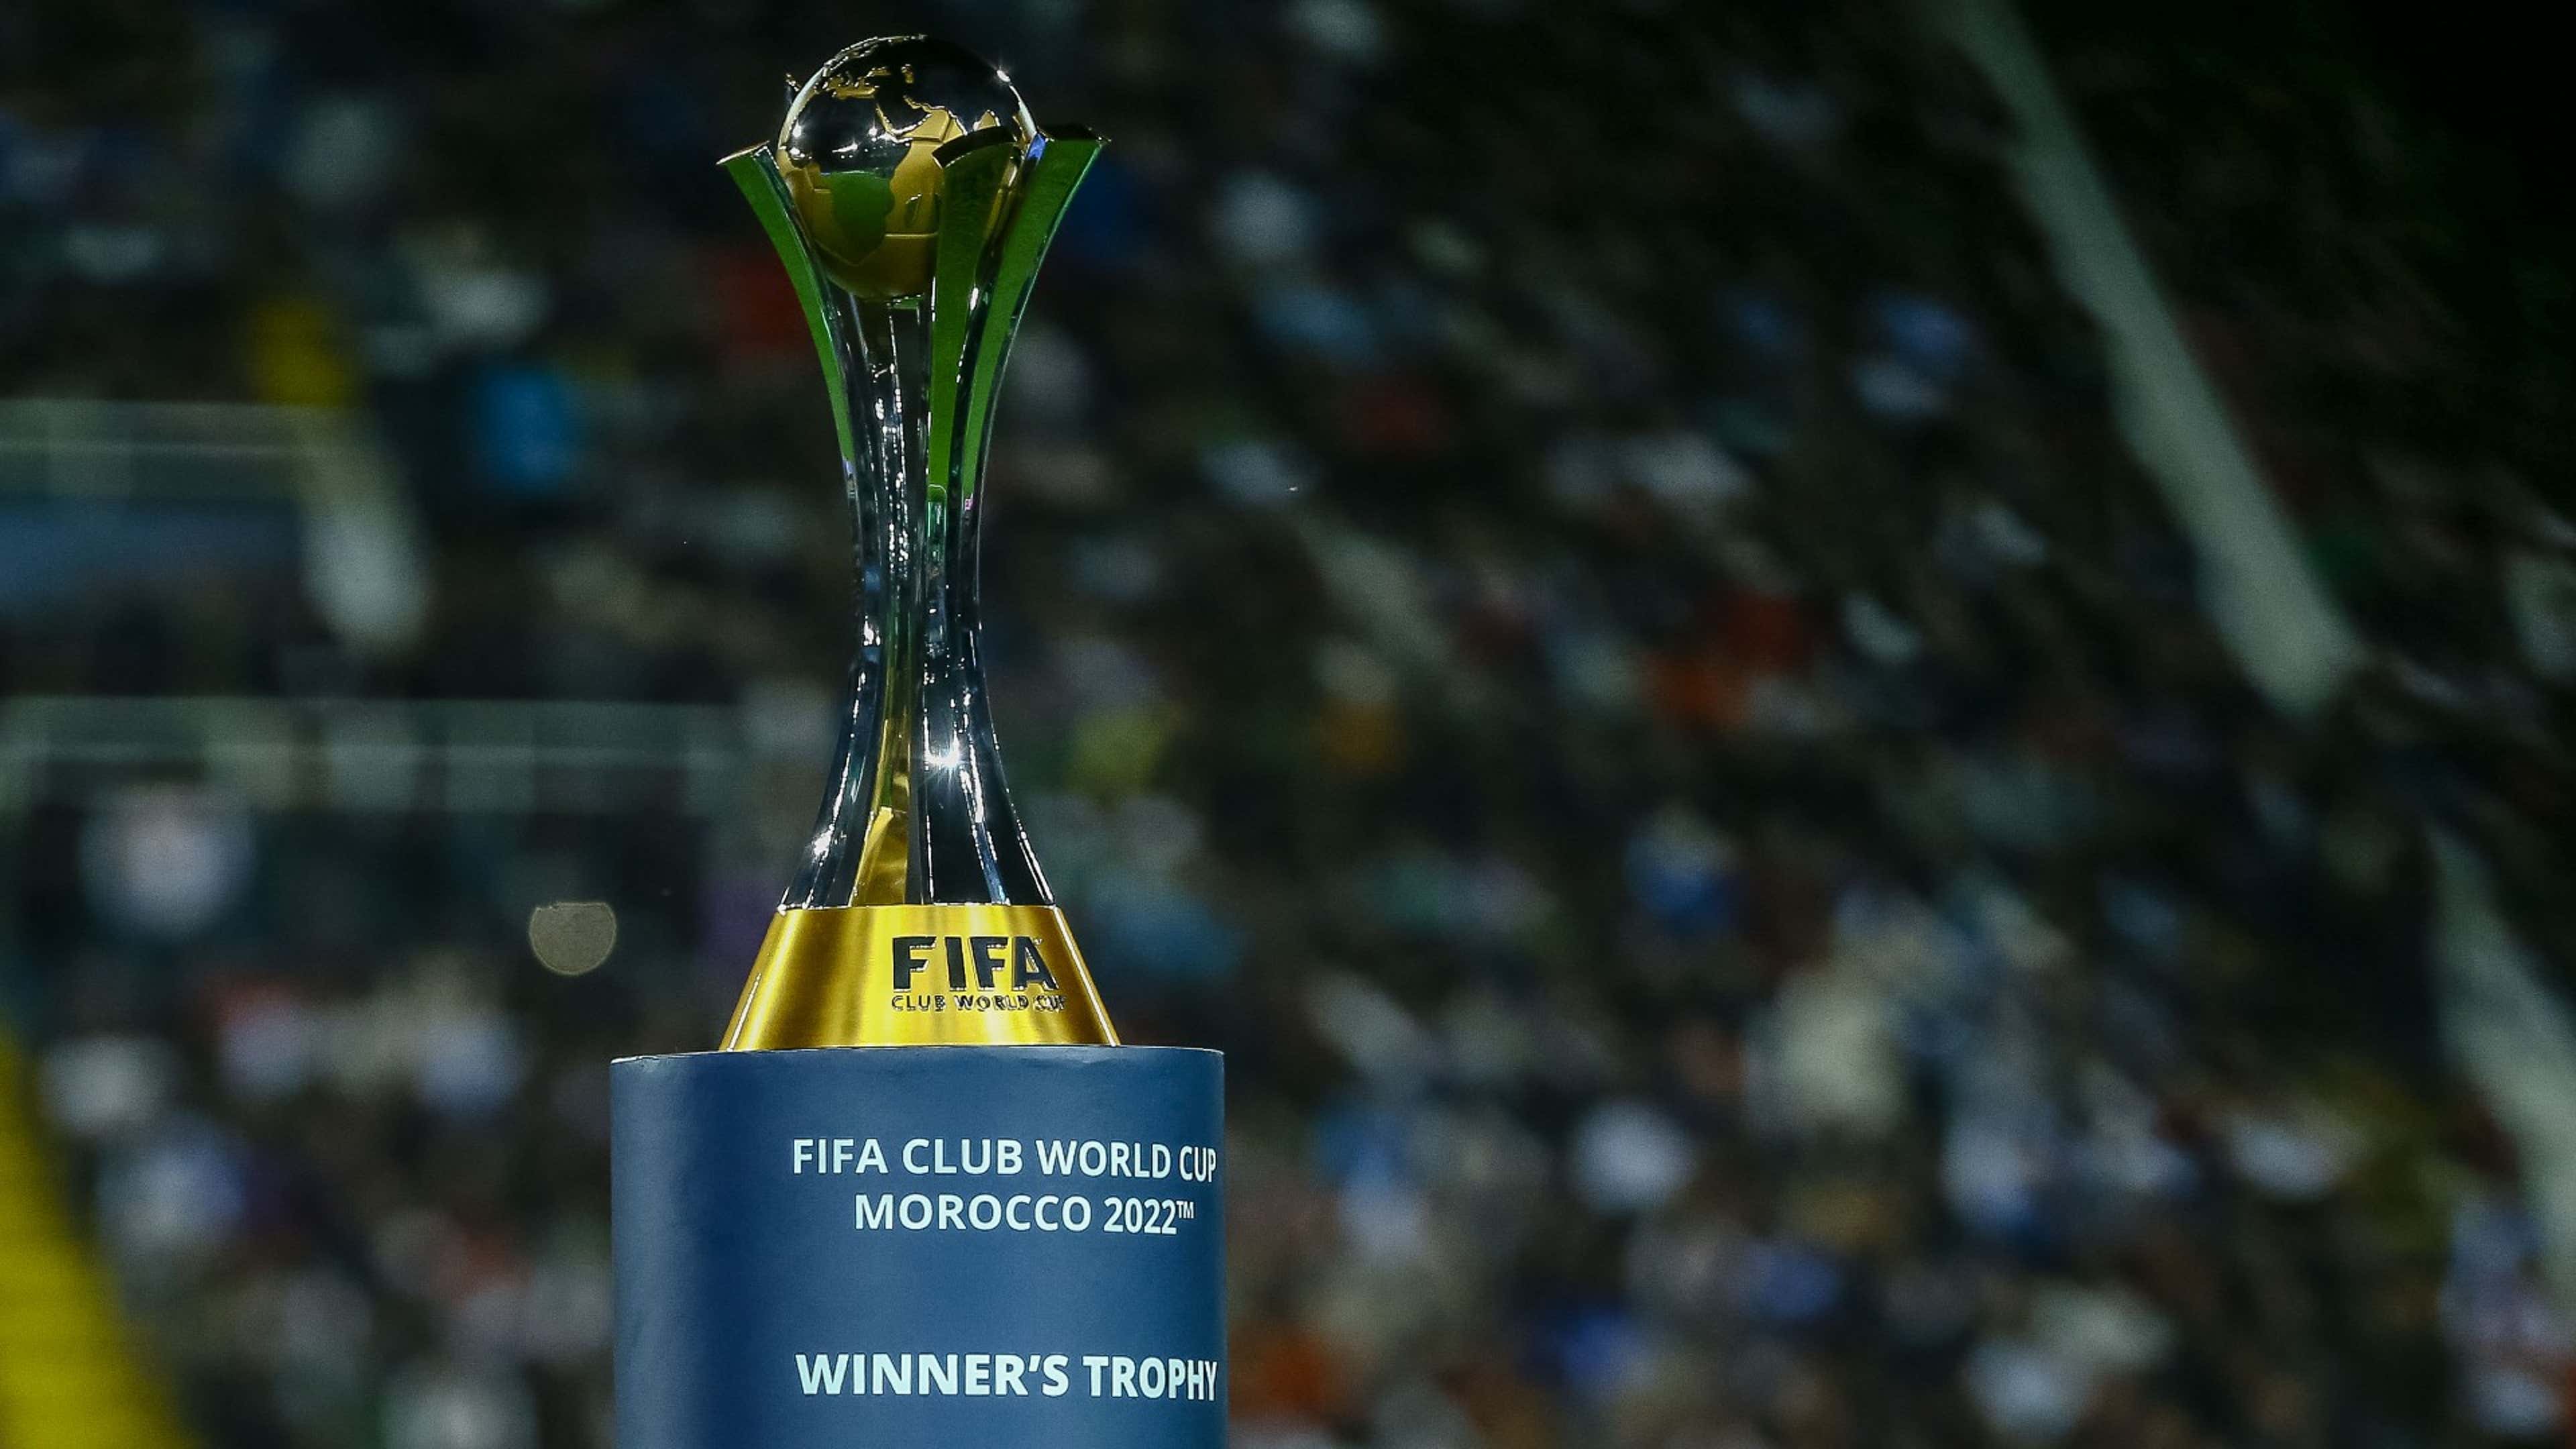 FIFA Club World Cup -- Trophy (International clubs)